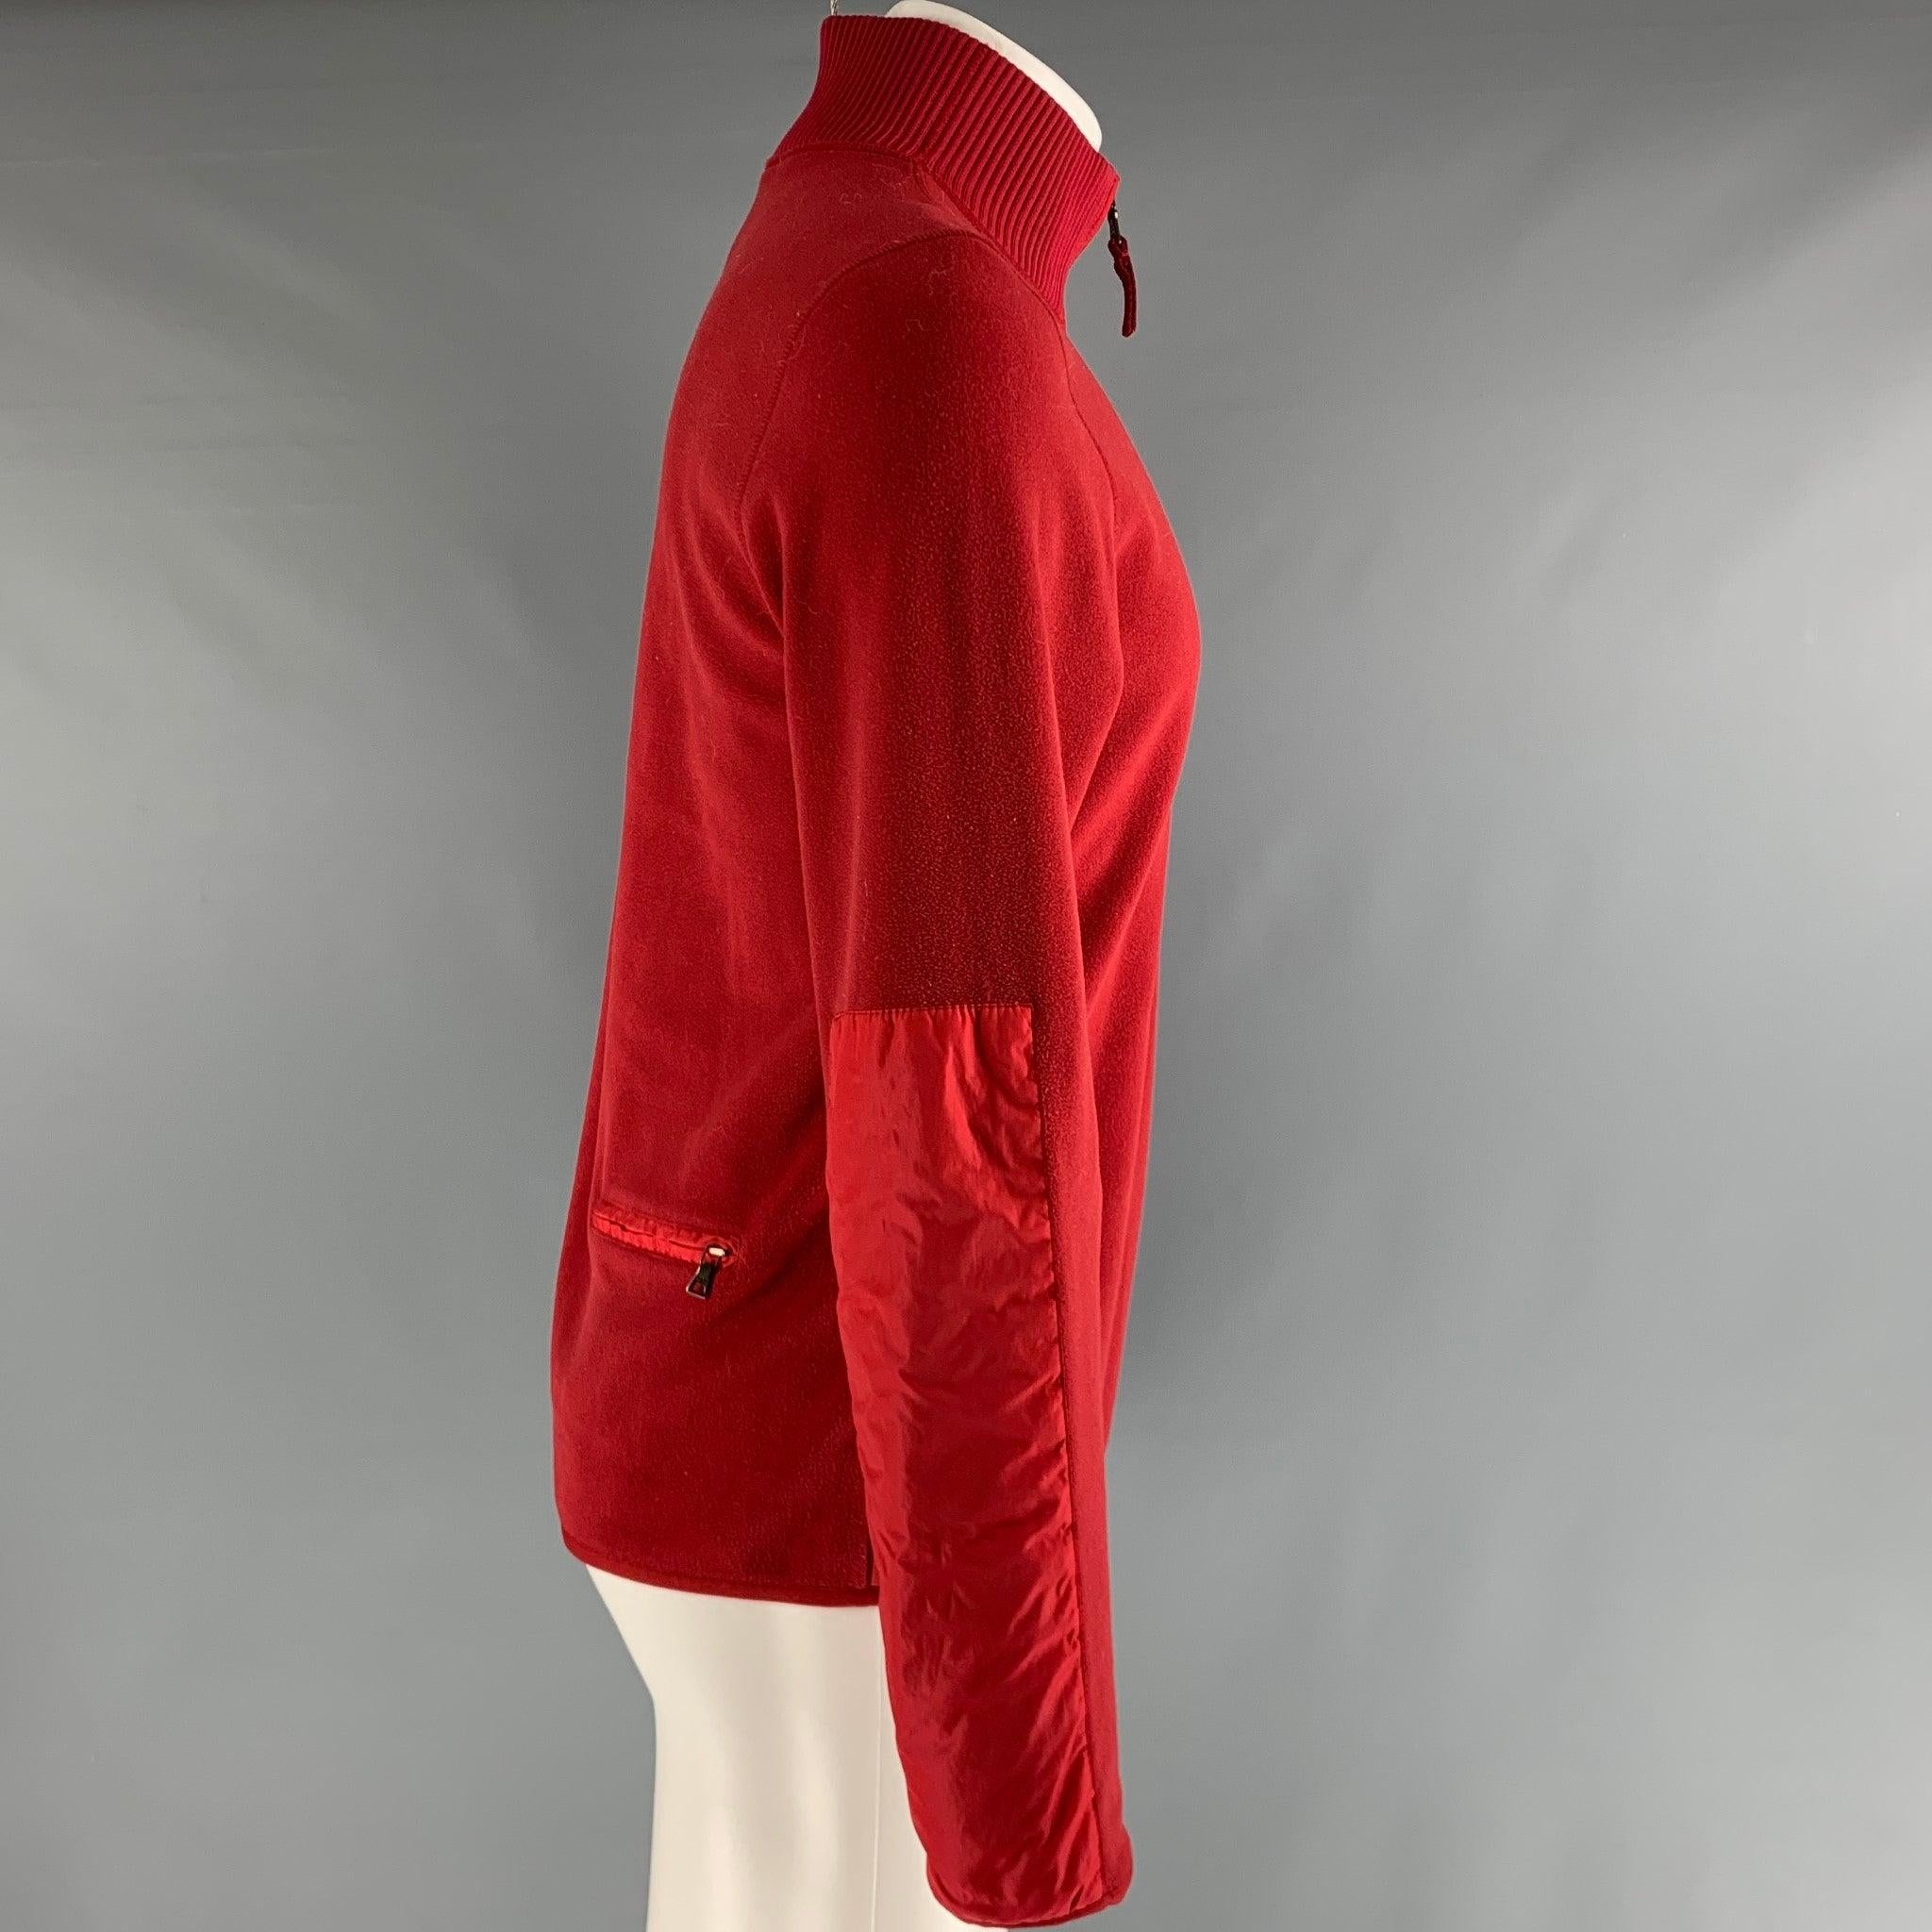 PRADA SPORT Pullover aus rotem Polyester-Fleece mit Rückentasche und 1/4-Reißverschluss. Sehr guter, gebrauchter Zustand. 

Markiert:   M 

Abmessungen: 
 
Schultern: 17,5 Zoll Brustumfang: 40 Zoll Ärmelumfang: 26 Zoll Länge: 27 Zoll  
 
  
  
